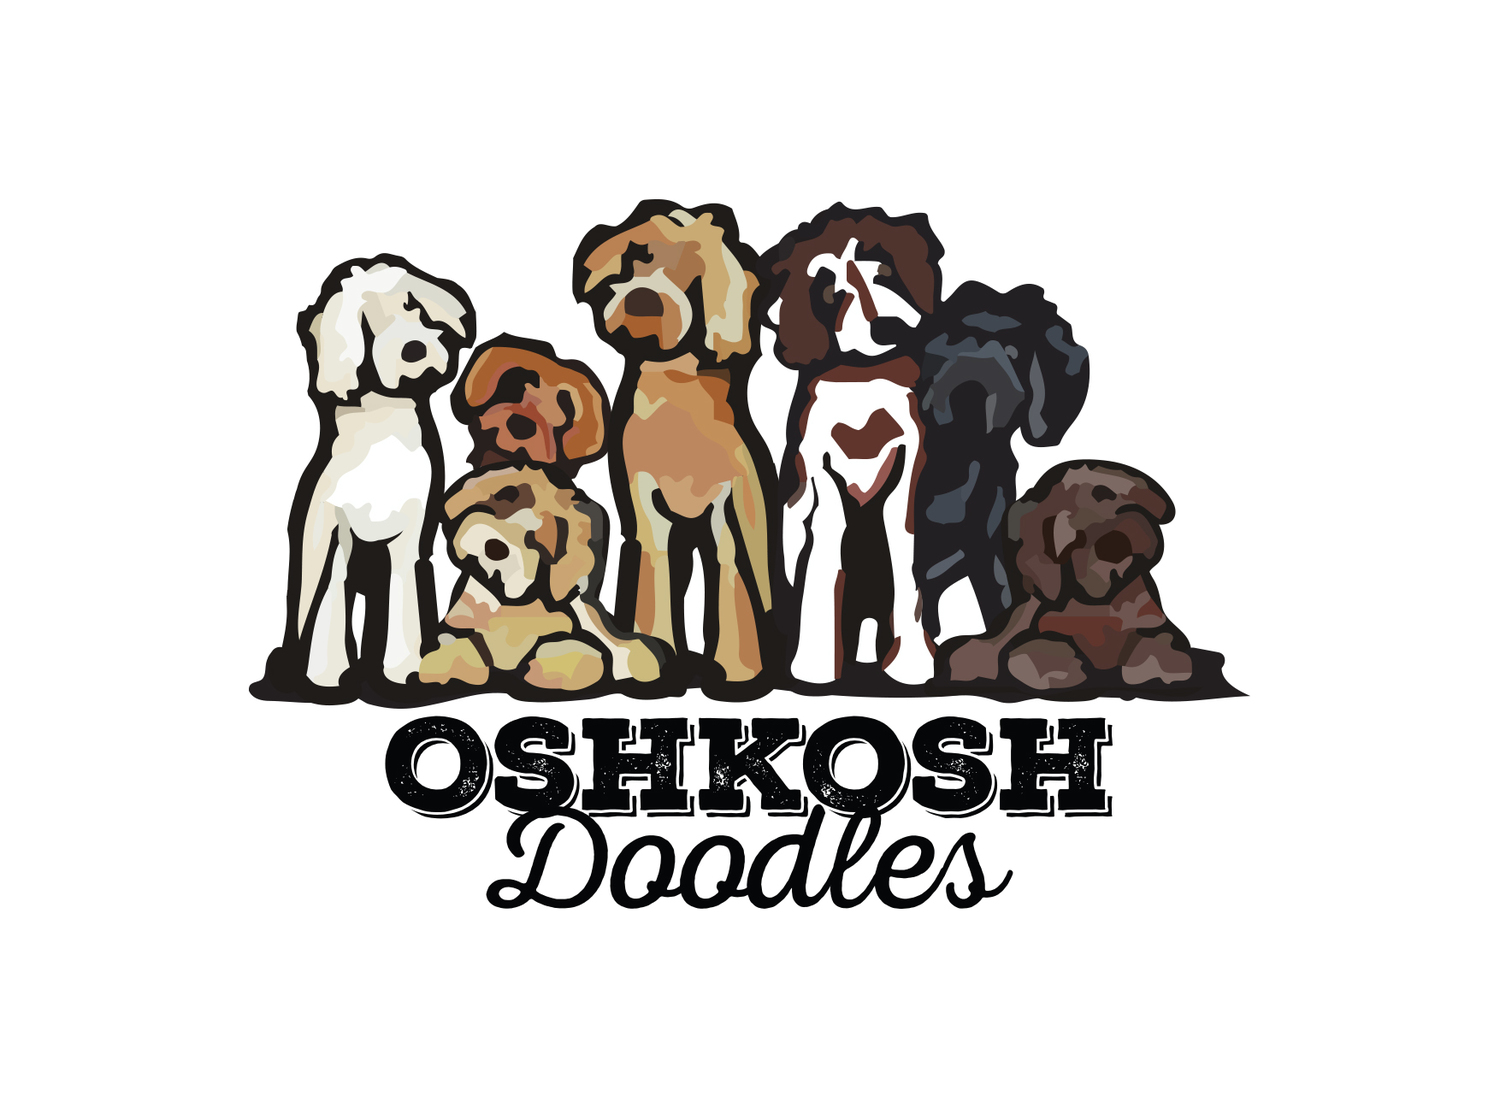 Oshkosh Doodles